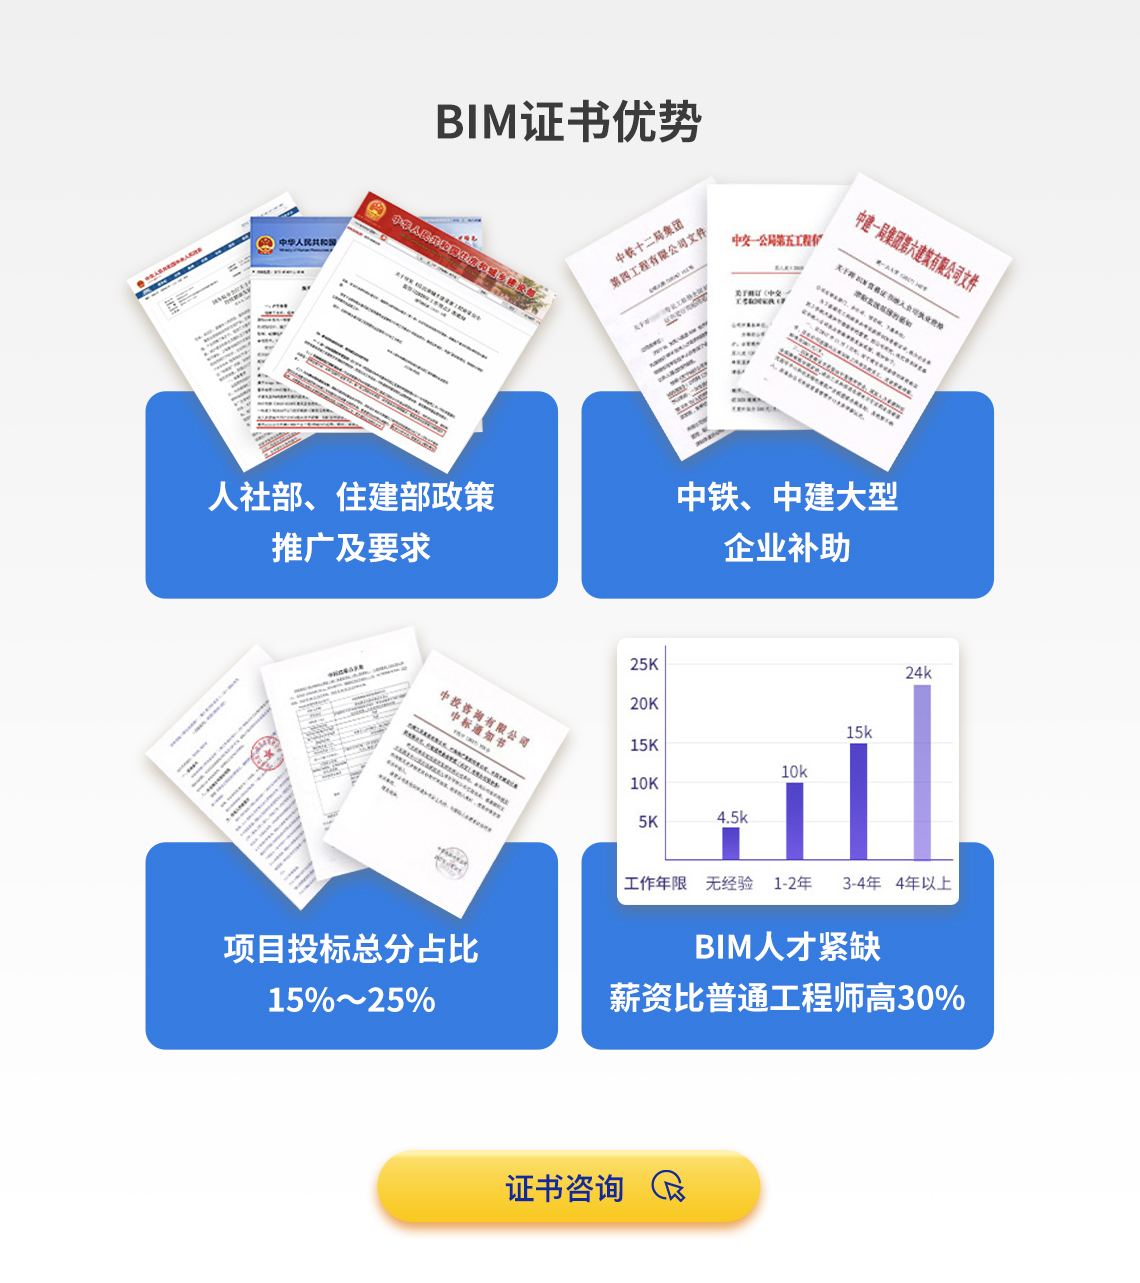 拥有BIM证书，将获得巨大优势，增加经济收入。